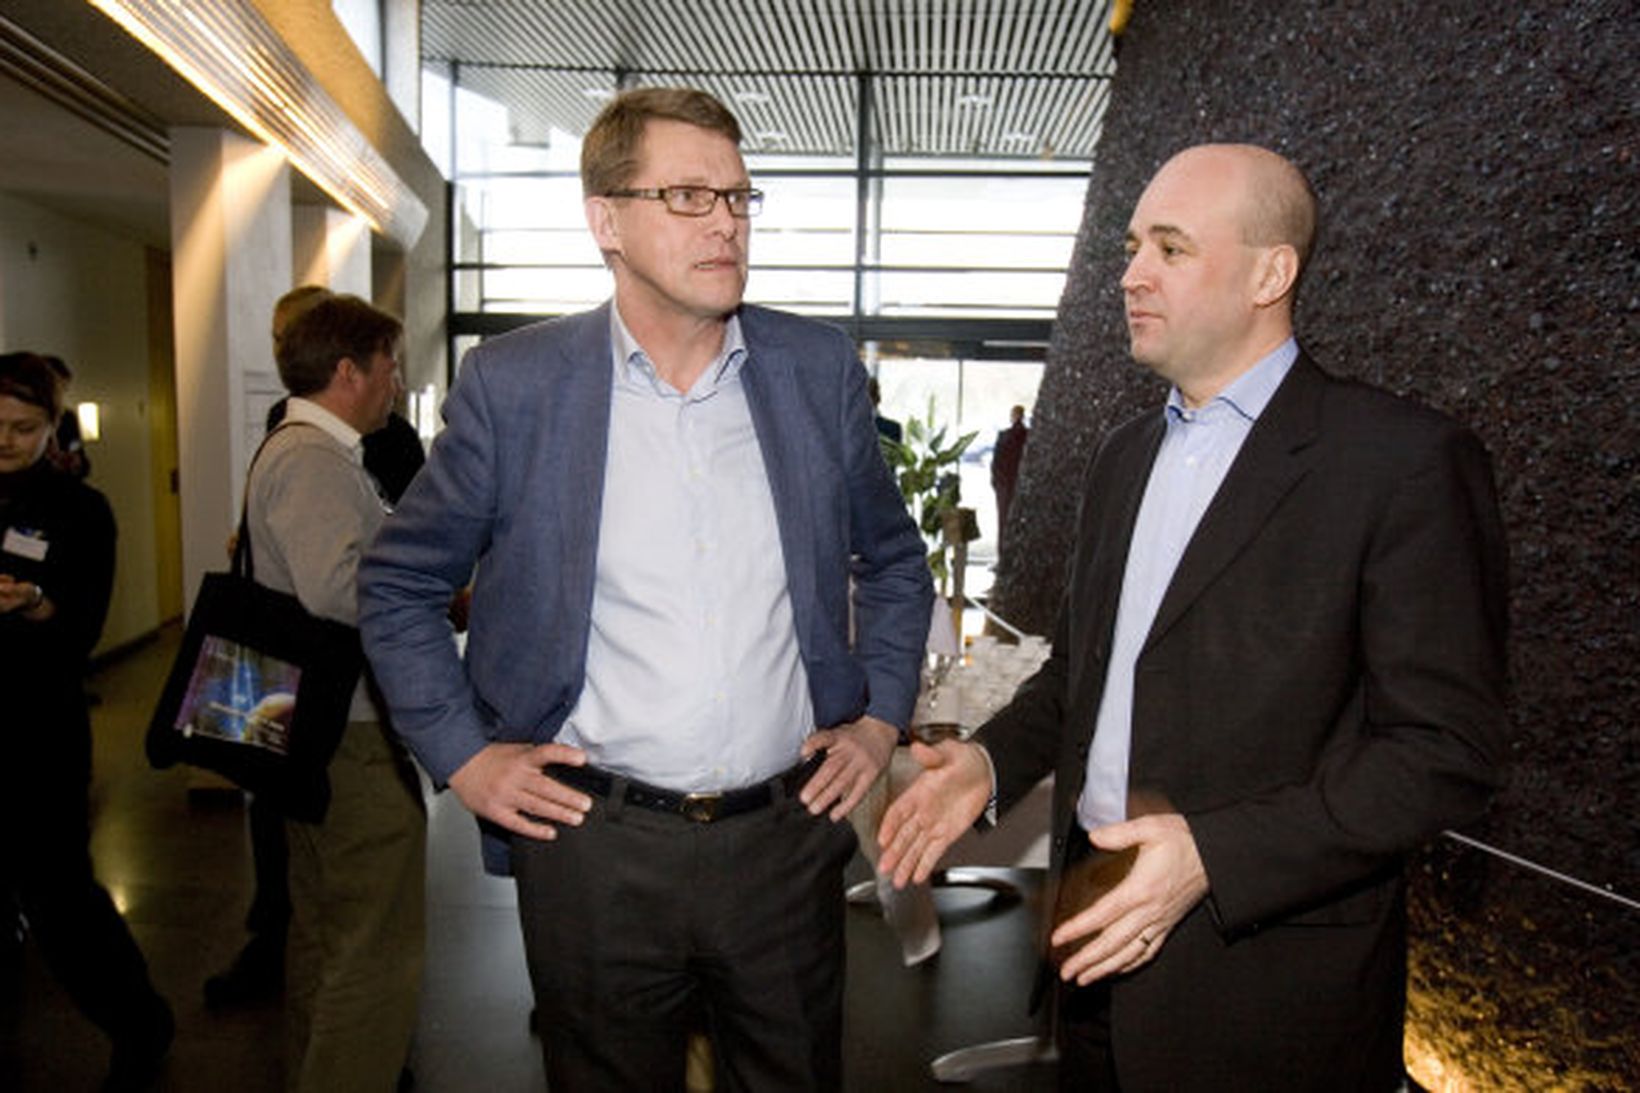 Matti Vanhanen og Fredrik Reinfeldt ræðast við á þinginu.